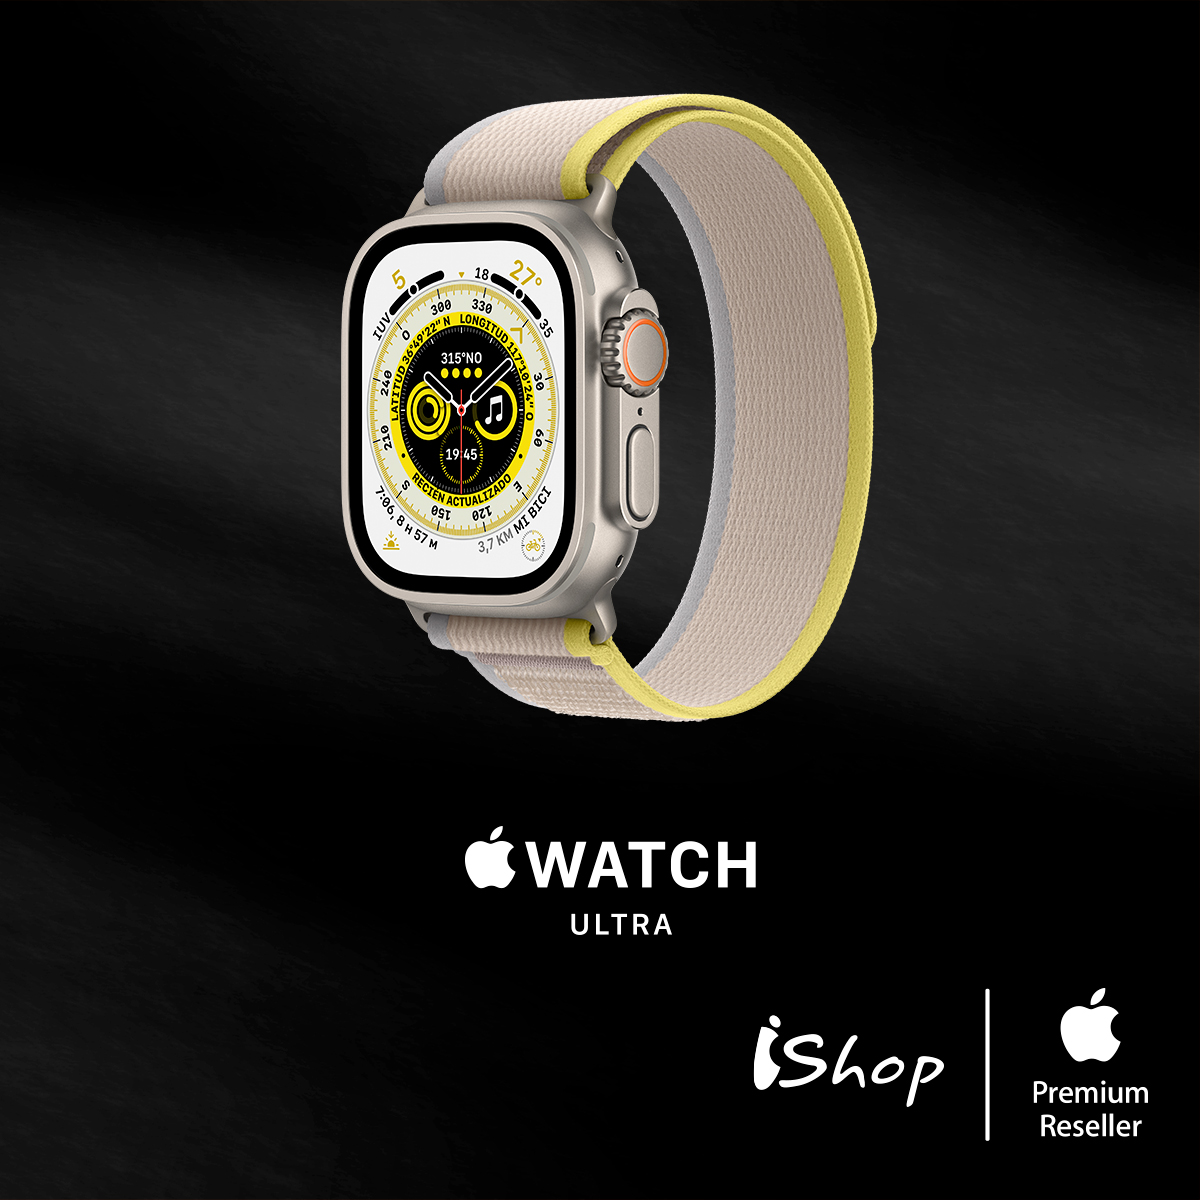 iShop anunció el Apple Watch Ultra en Colombia